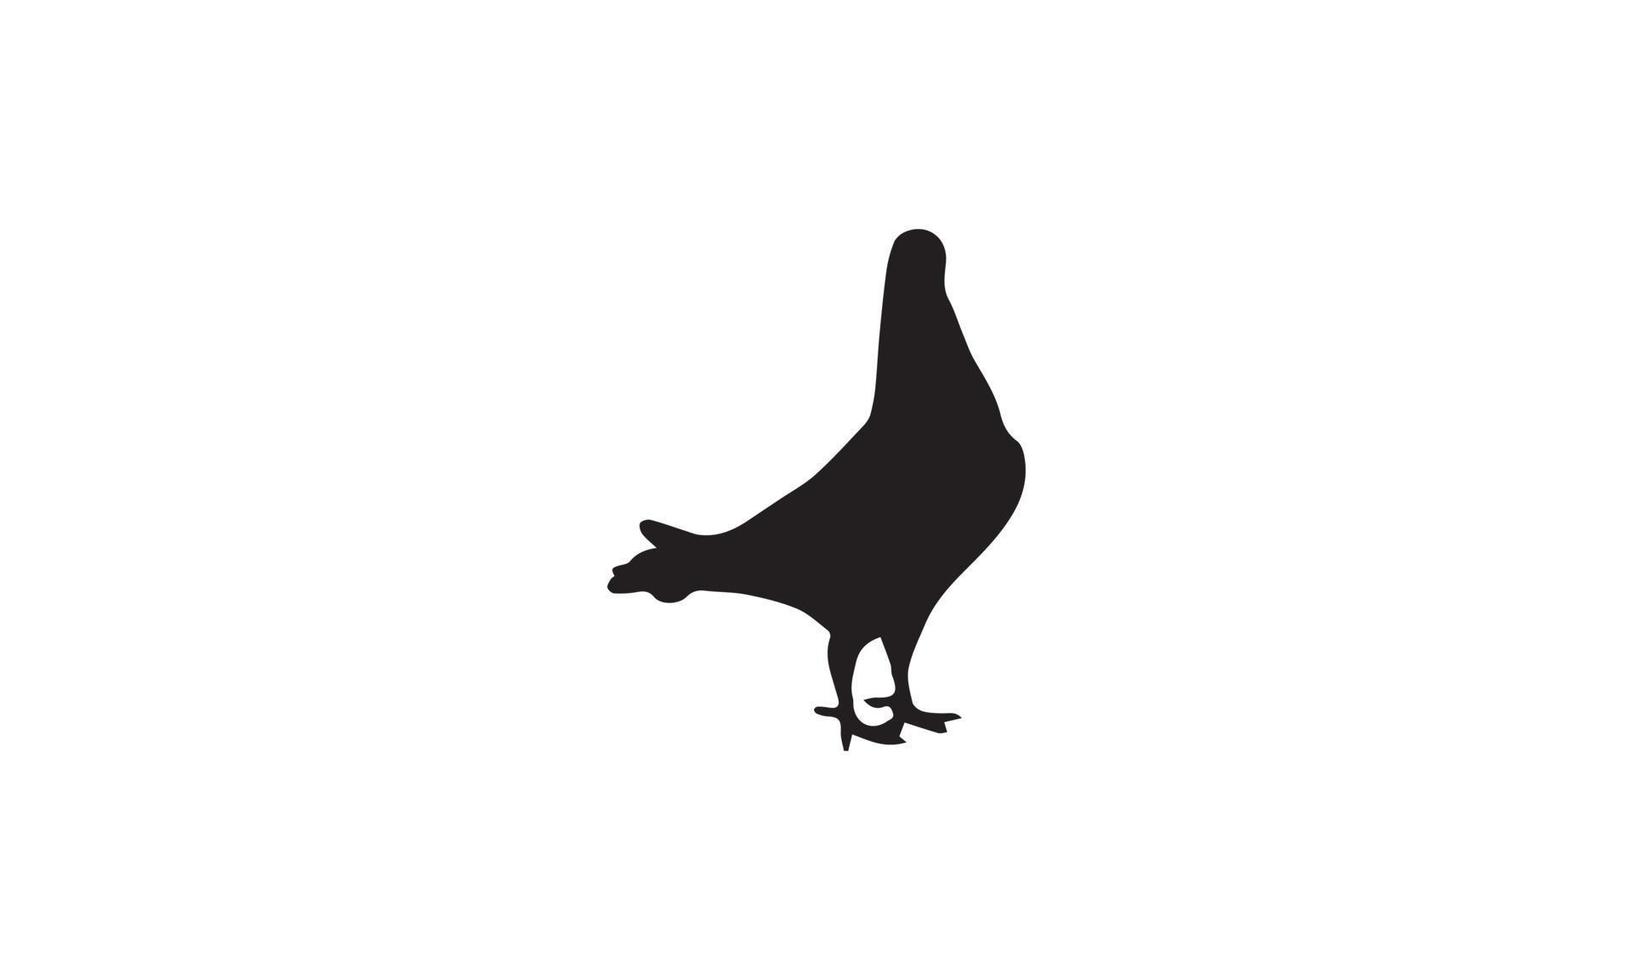 diseño de ilustración de vector de paloma en blanco y negro